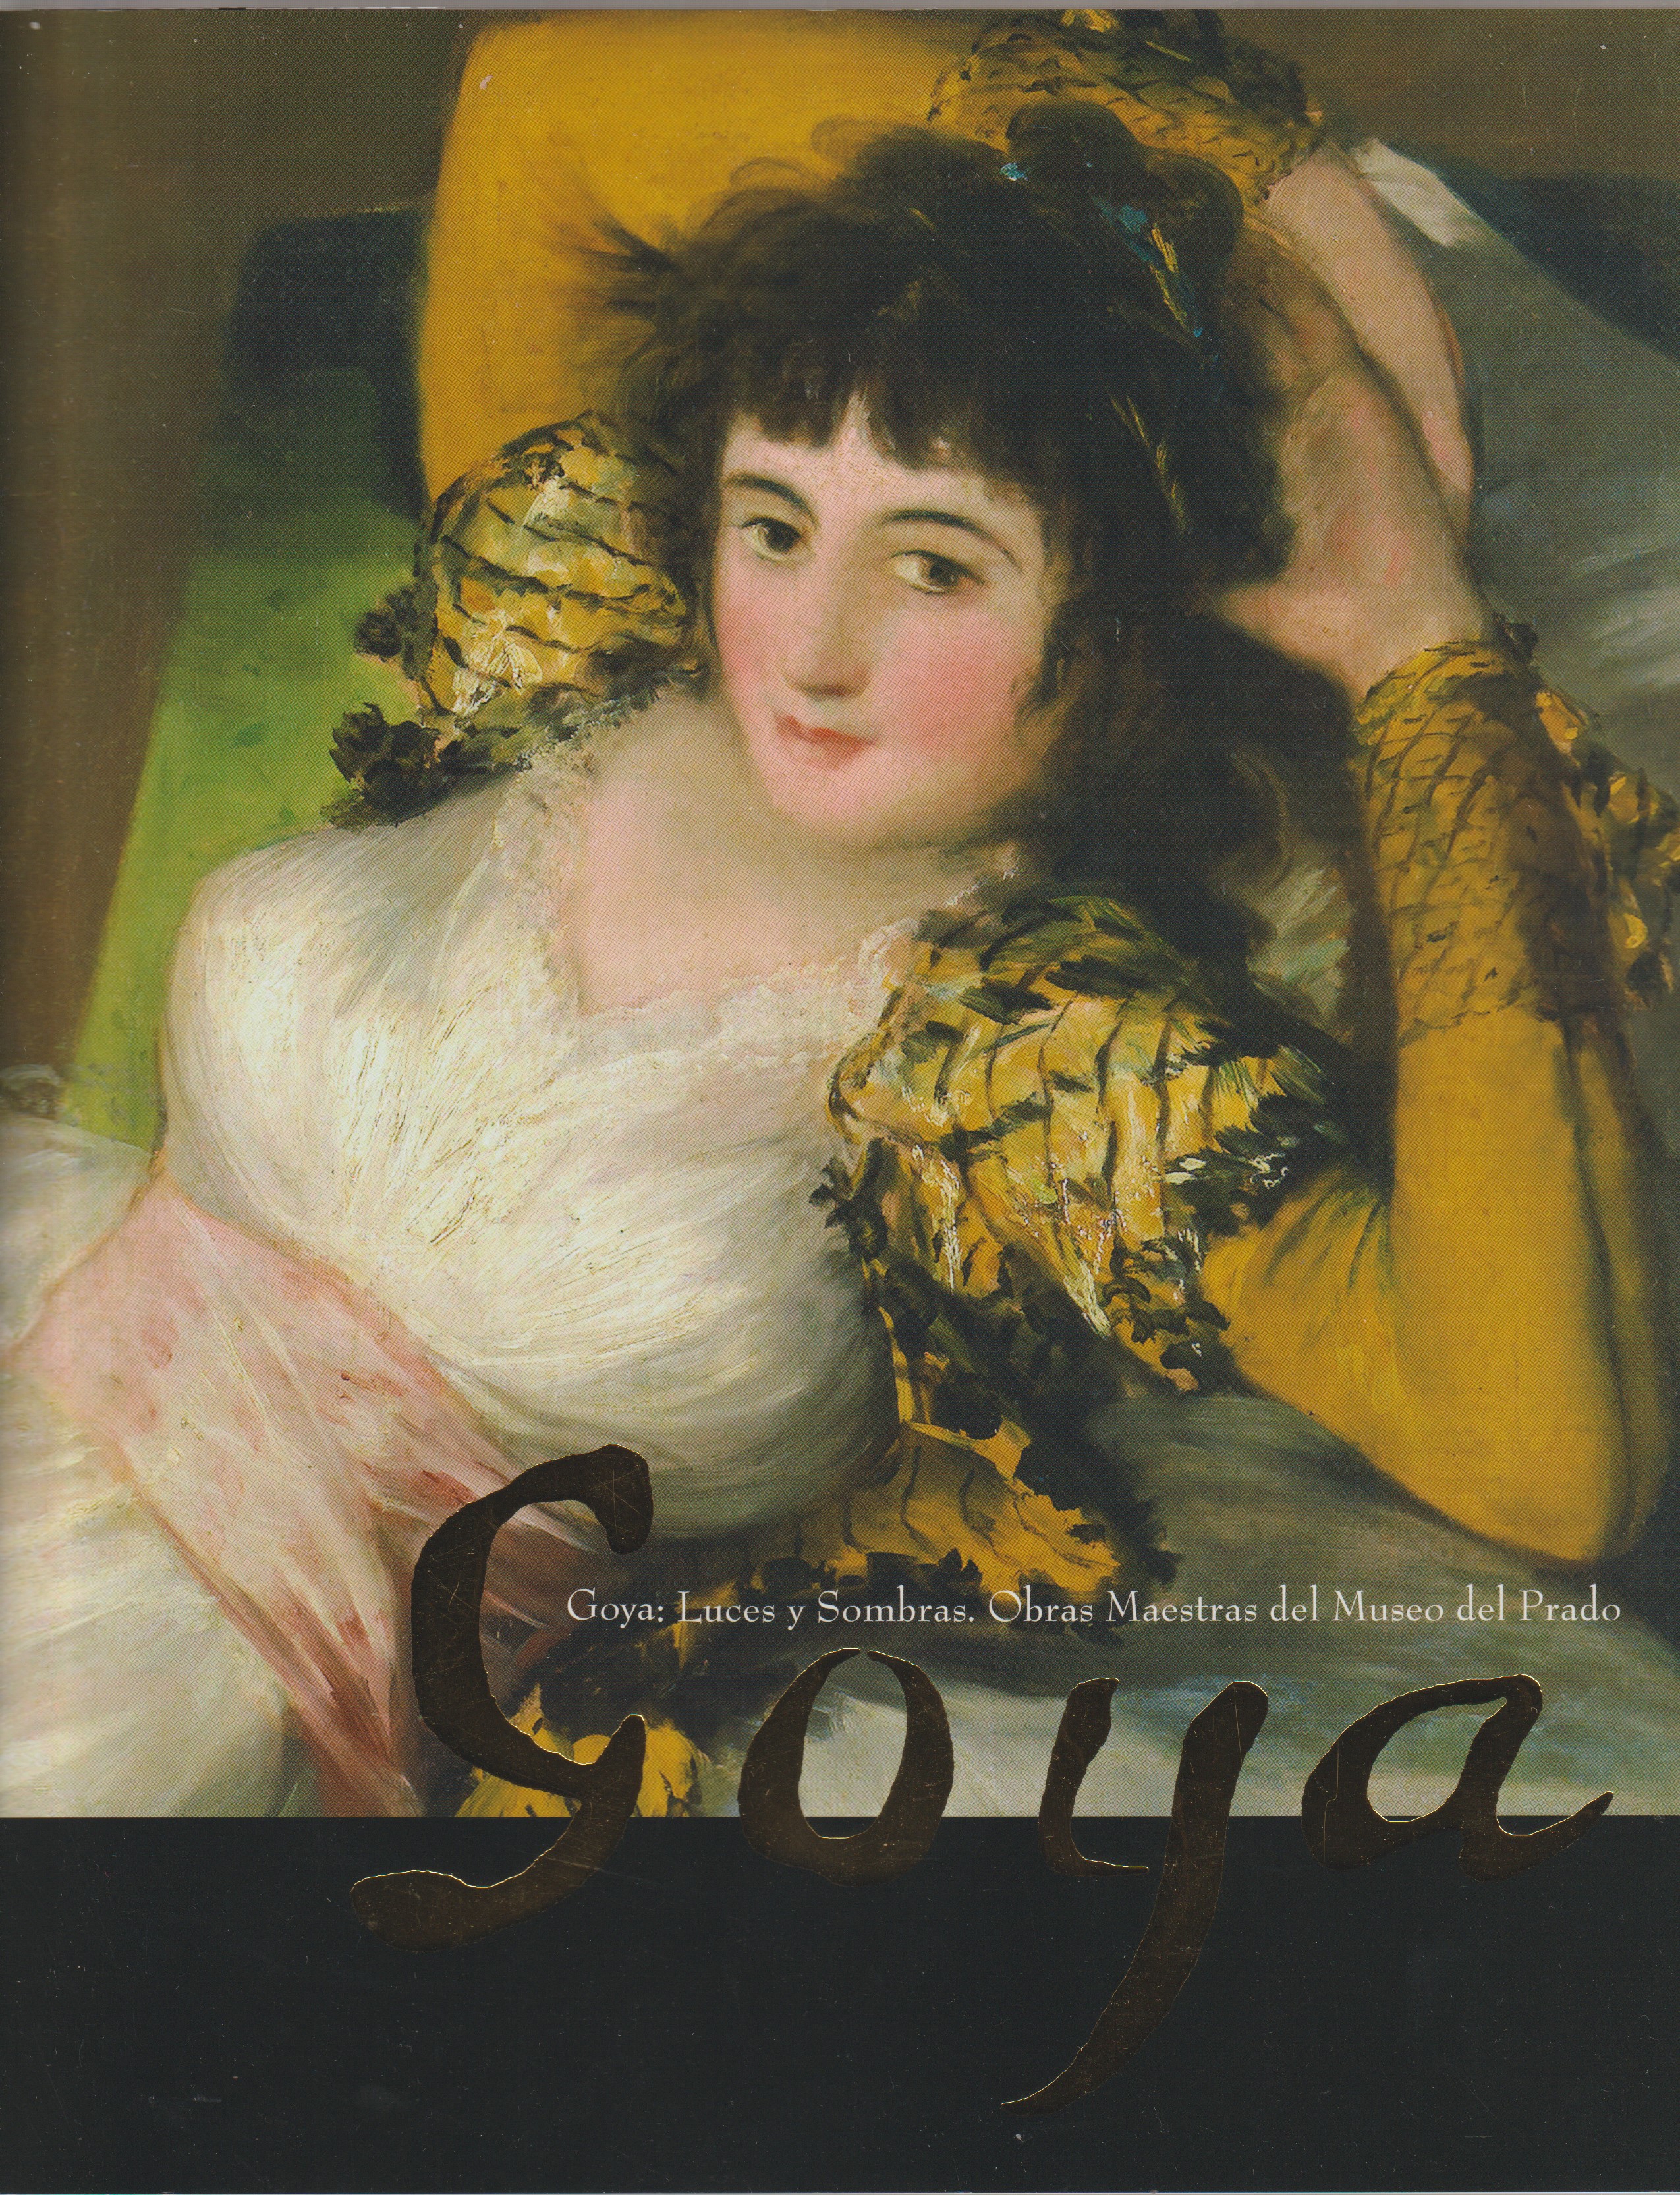 プラド美術館所蔵ゴヤ = Goya : 光と影